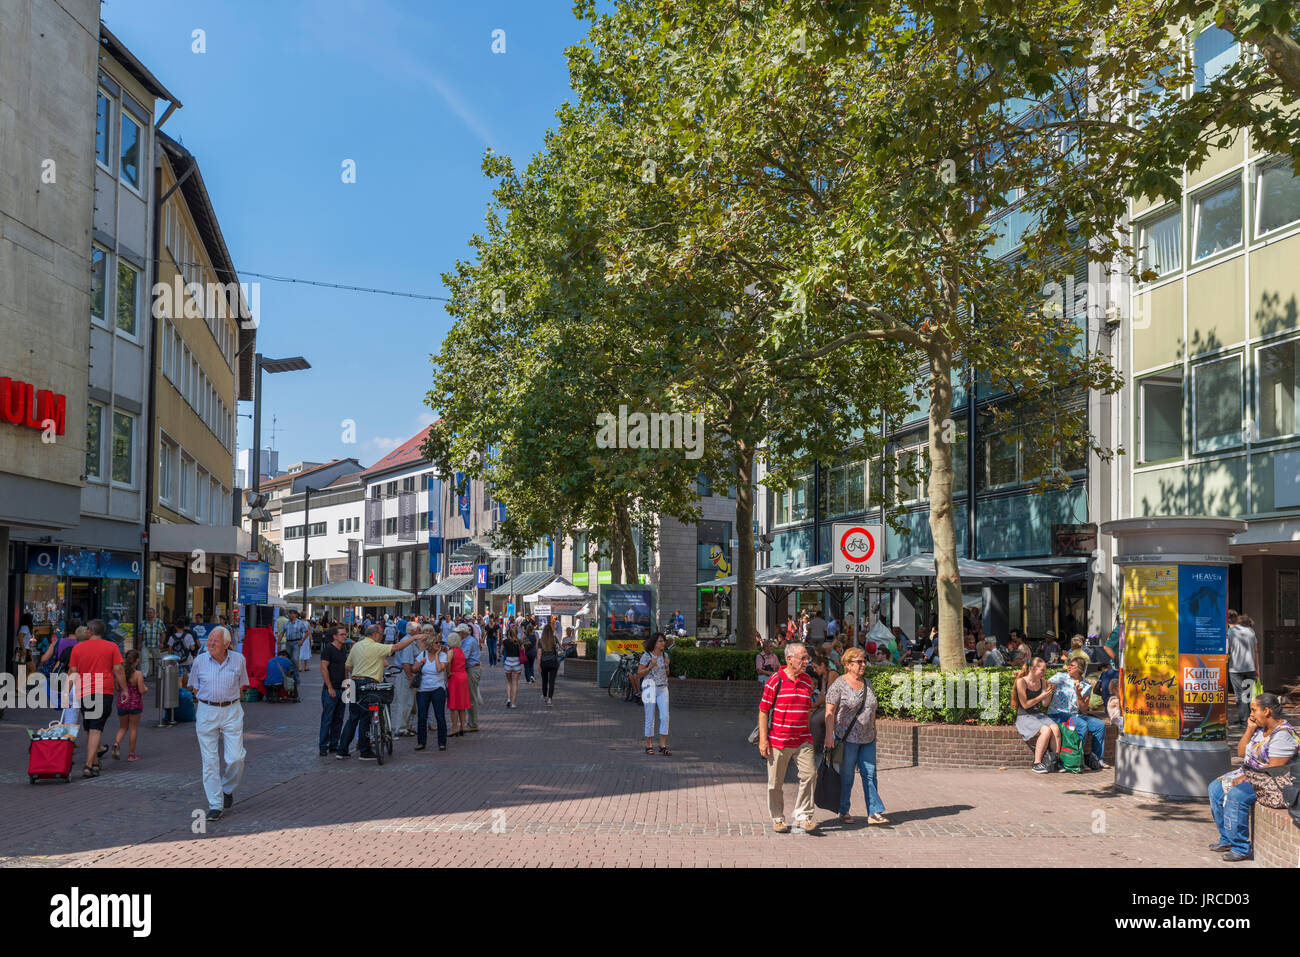 Tiendas en el centro de la ciudad, Ulm, Baden-Württemberg, Alemania Foto de stock